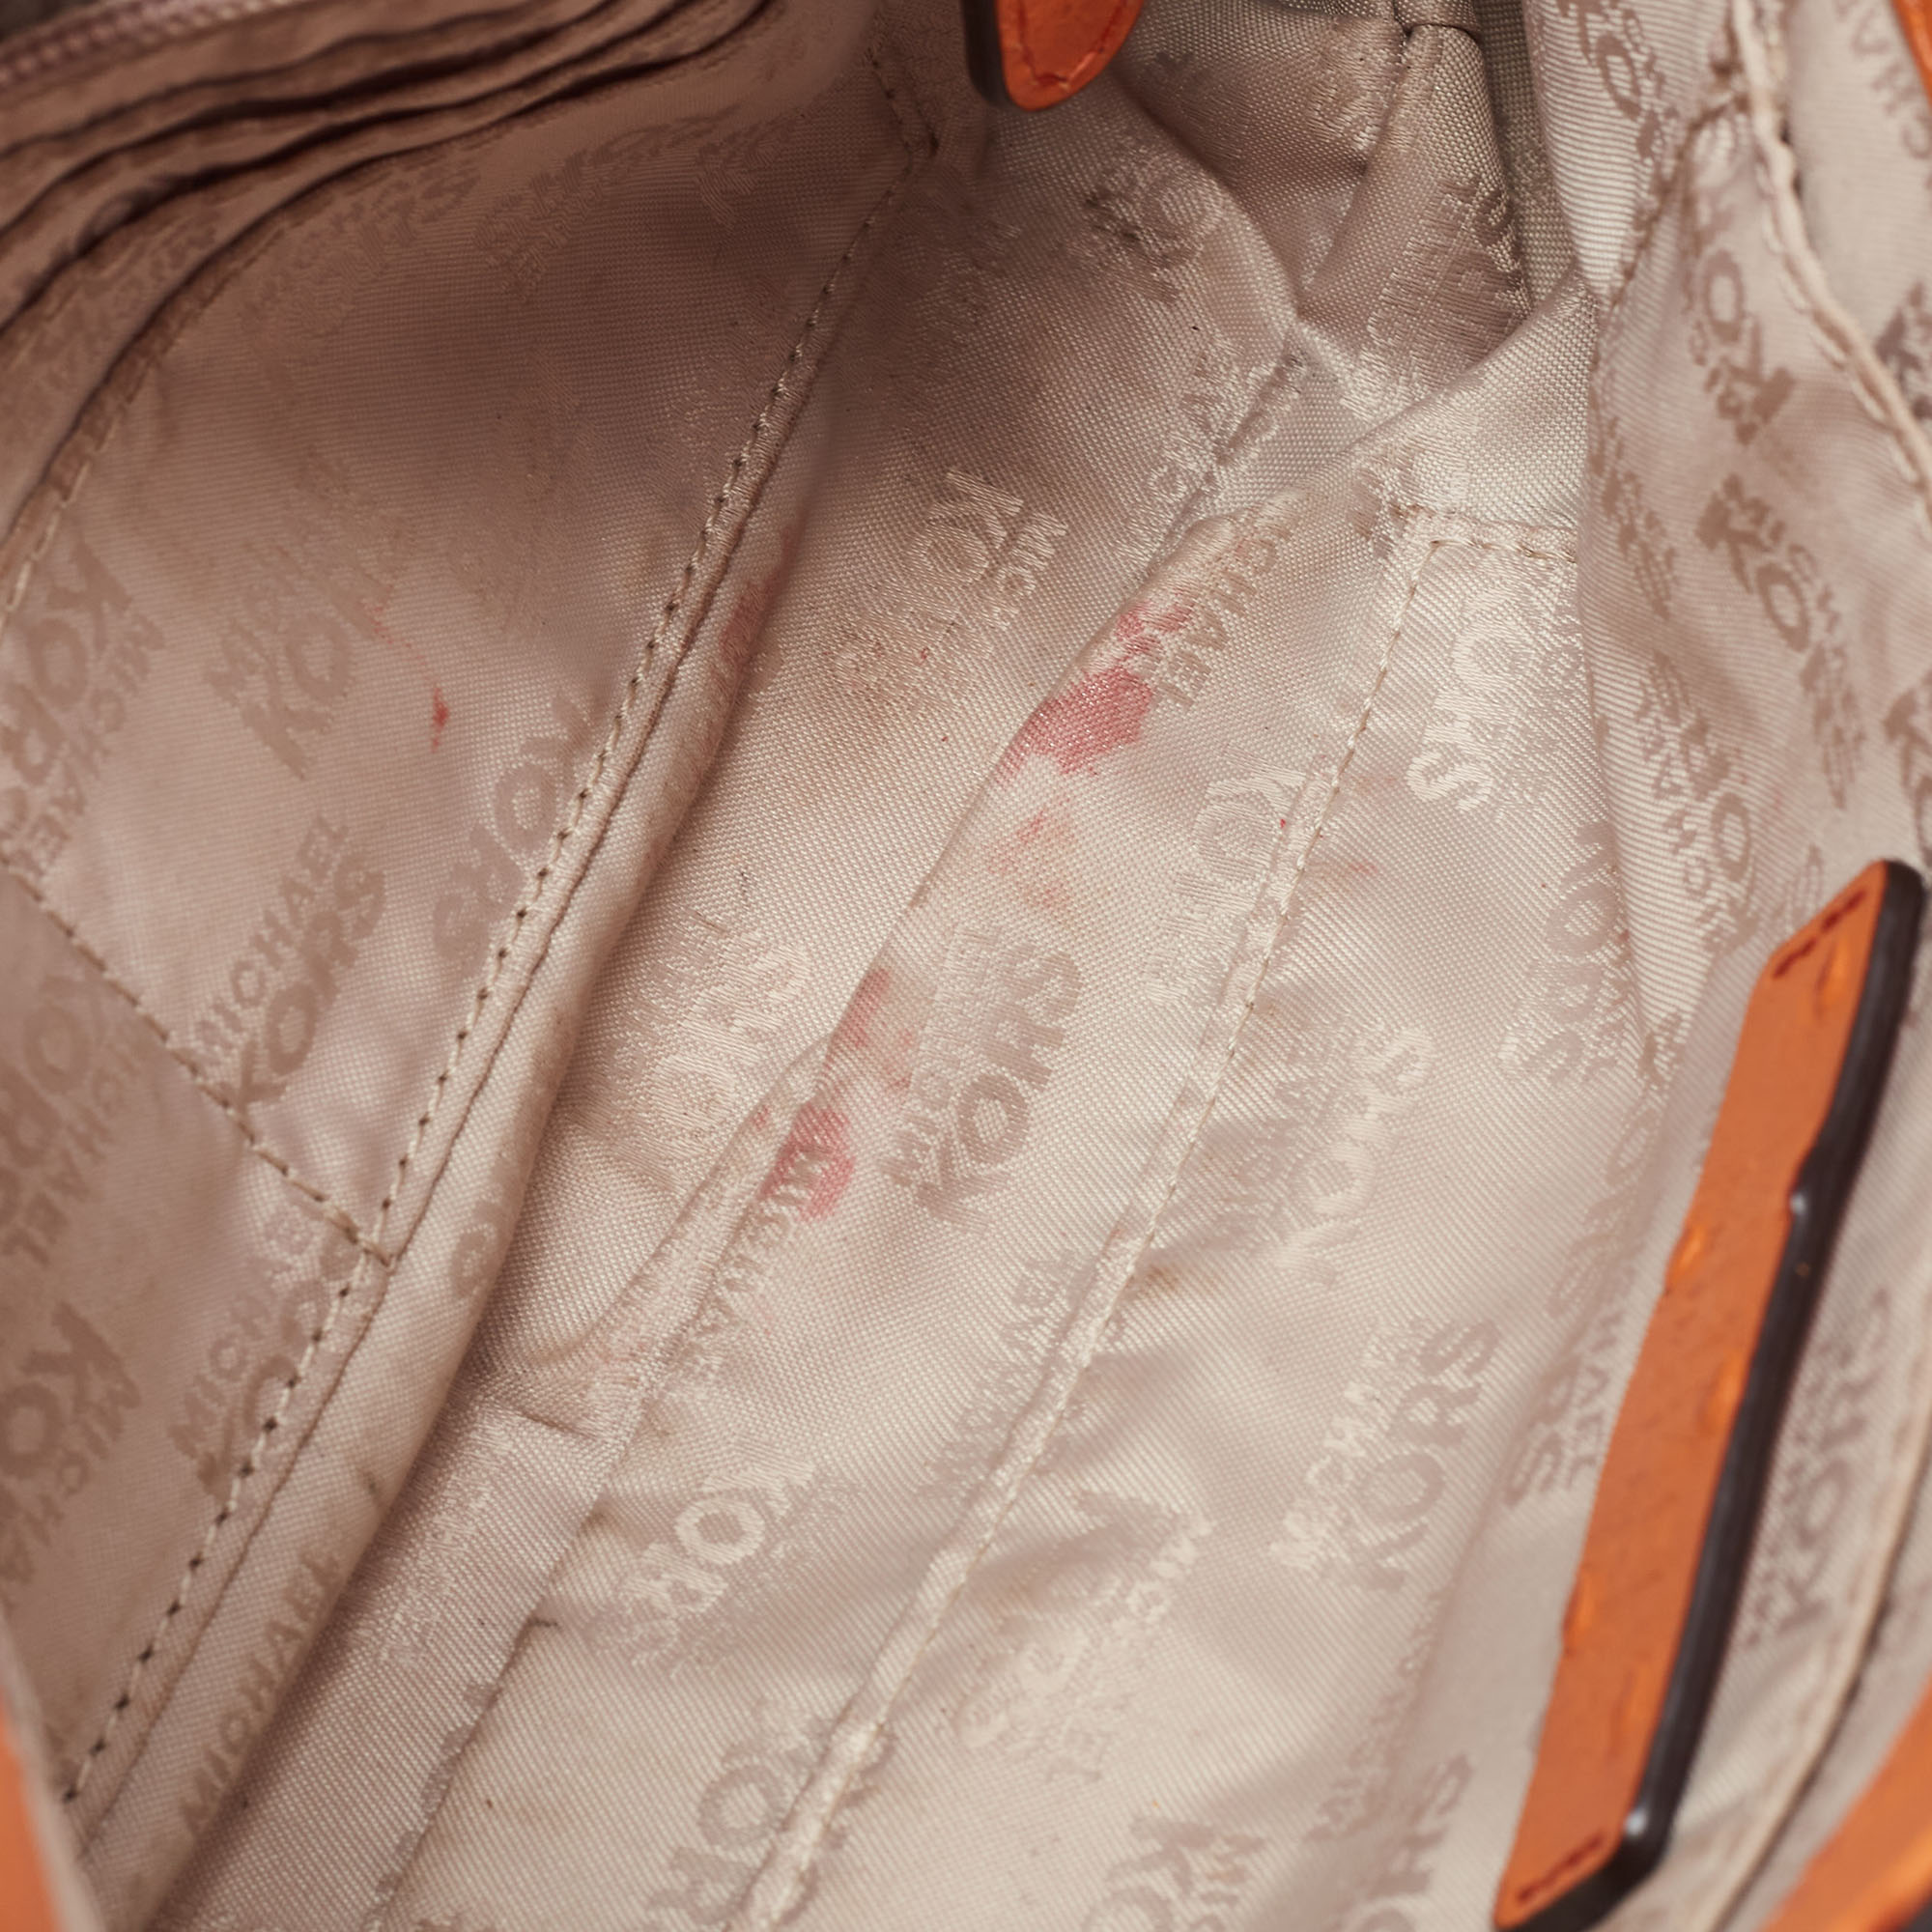 Michael Kors Orange Ostrich Embossed Leather Hamilton Flap Shoulder Bag